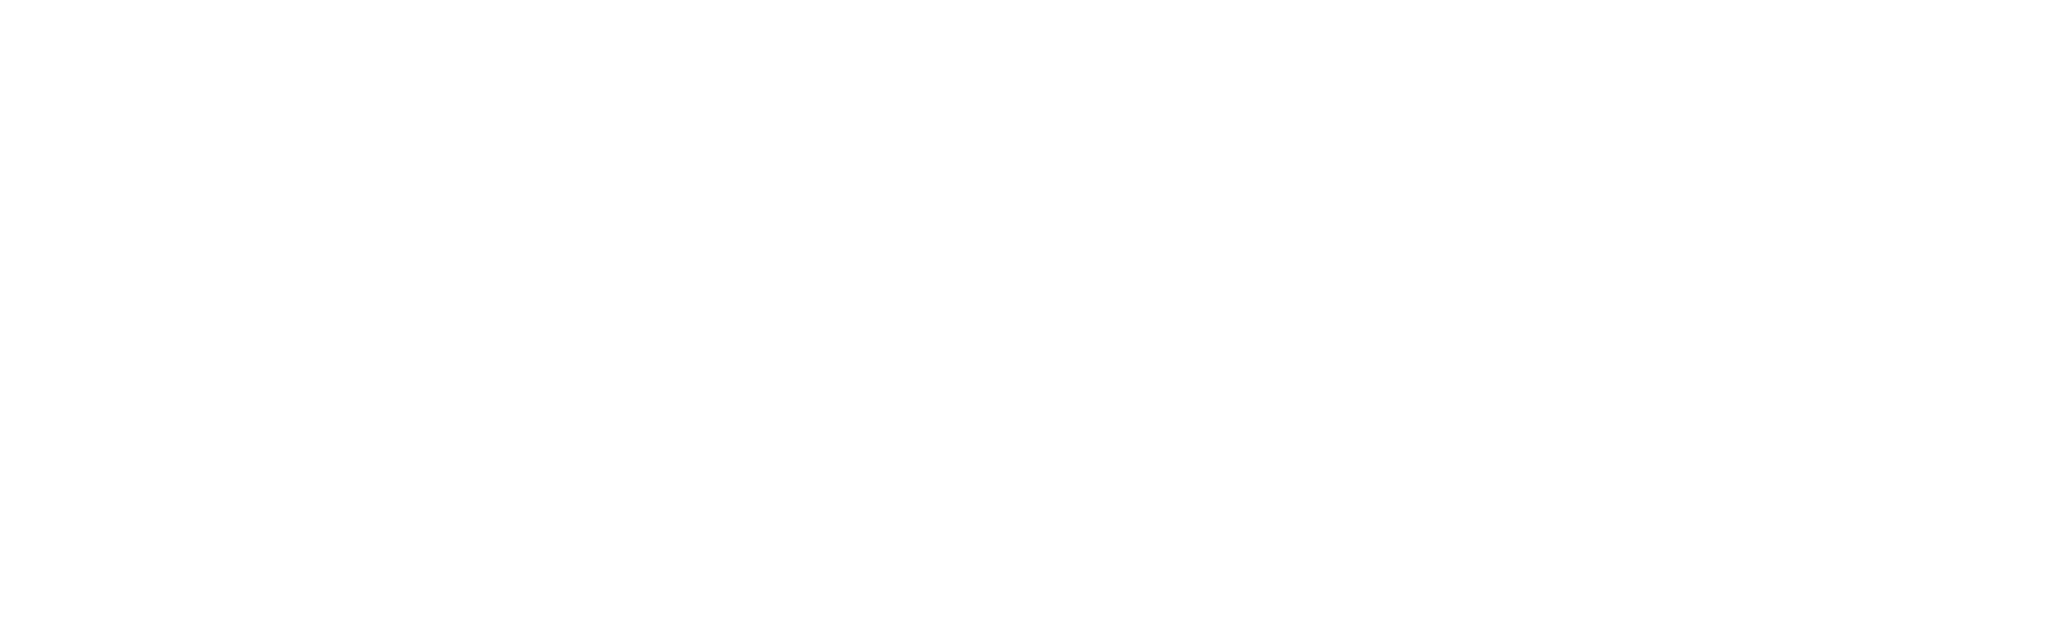 Investir à Toulouse